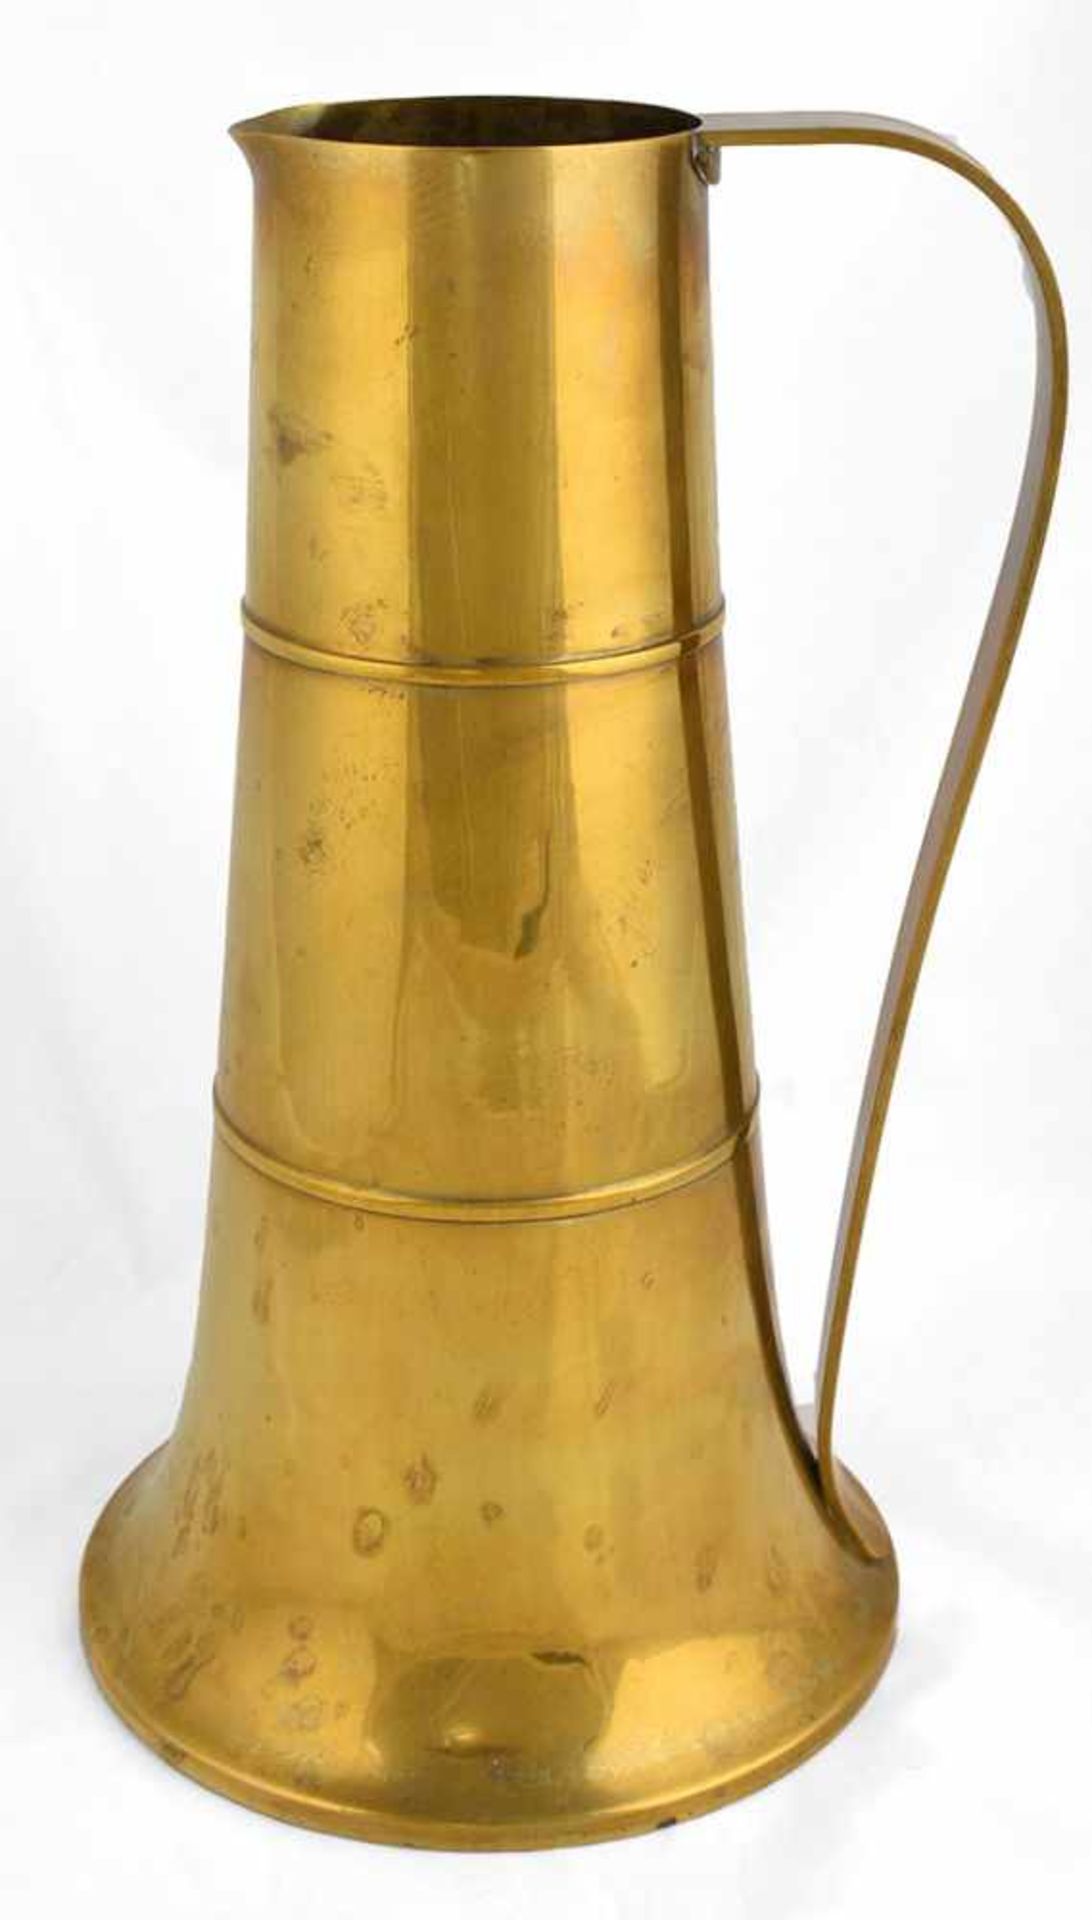 Schenkkanne Schwäbische Zinn- und Silberschmiede Harald Buchrucker, Messing, hohe konische Wandung - Bild 2 aus 3